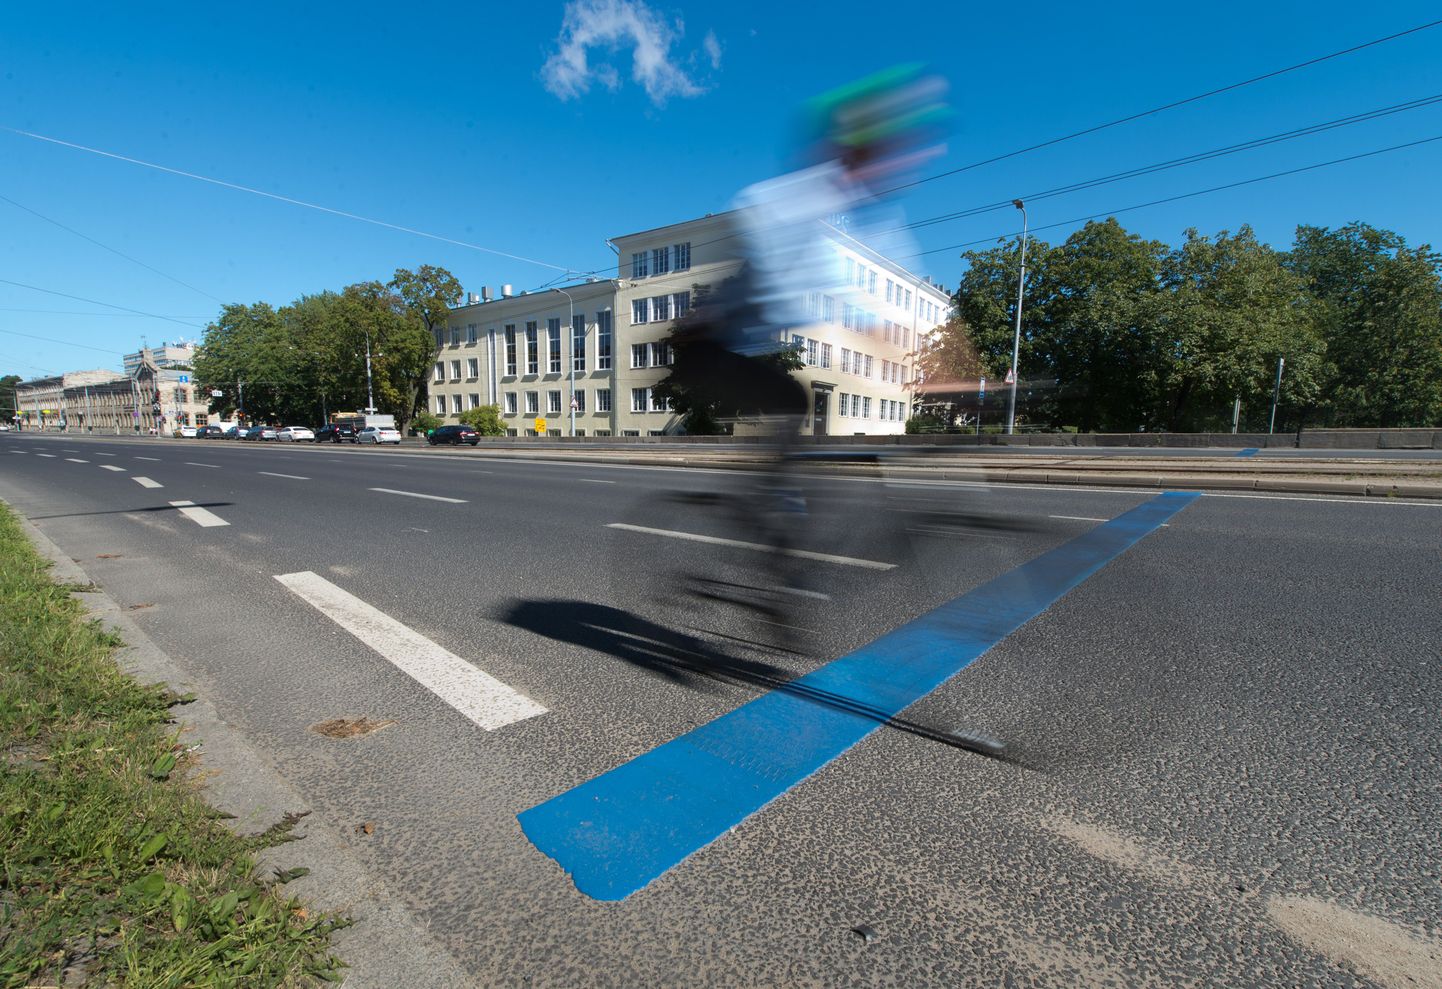 Sinine joon Pärnu maanteel märgib tasulise parkimisala piiri.